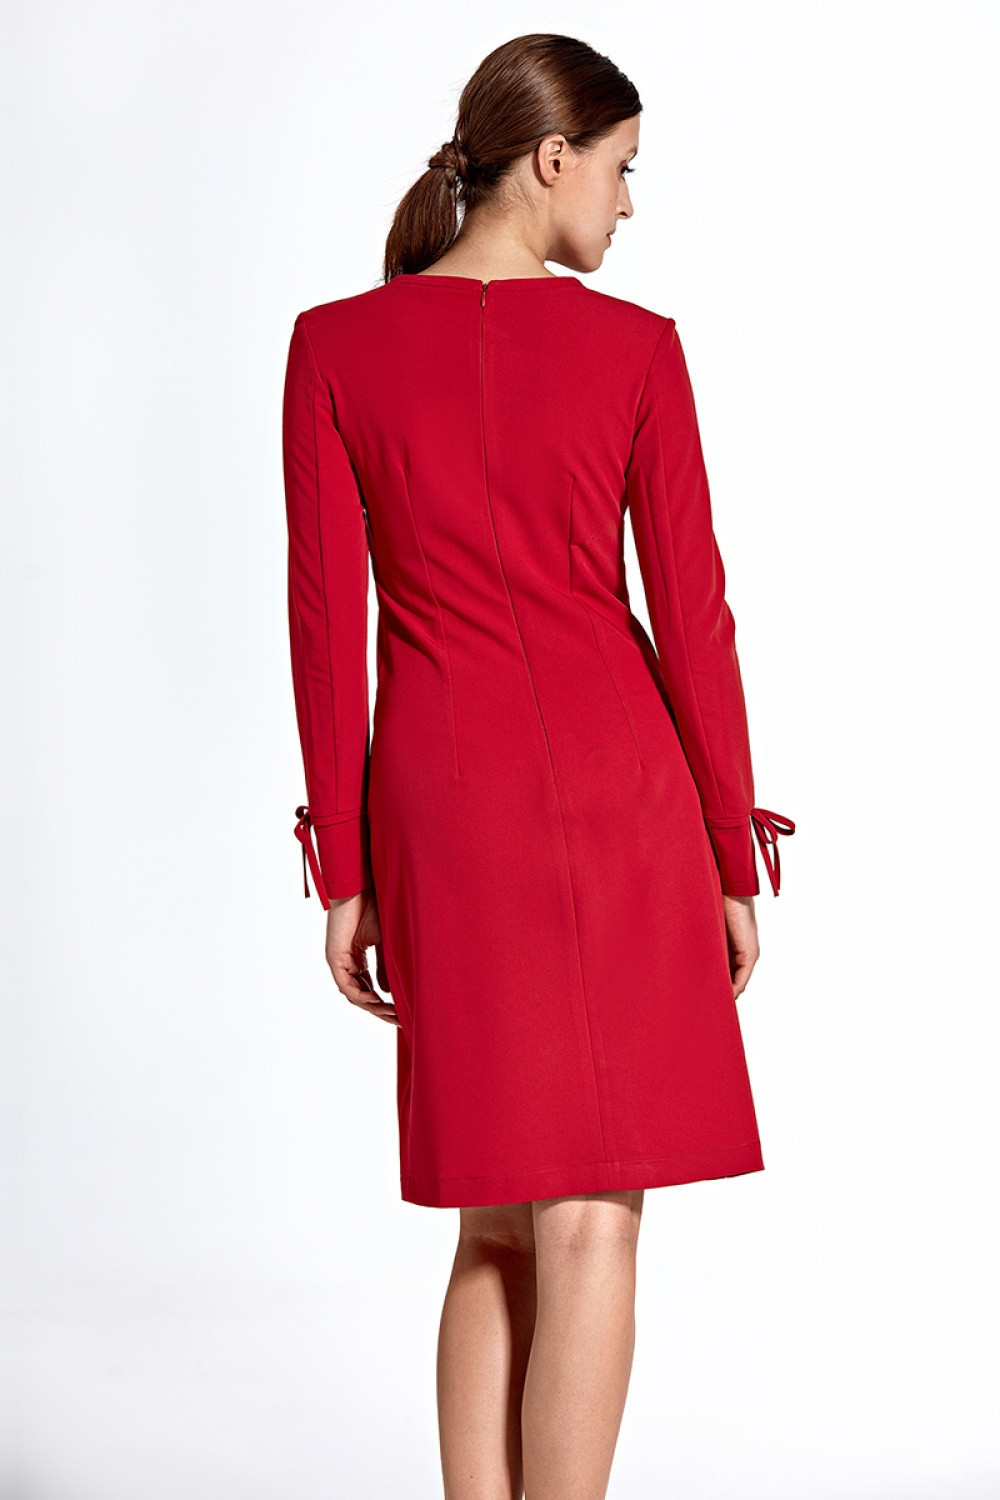 Dámské šaty CS24 - Colett Velikost: 42/XL, Barvy: červená